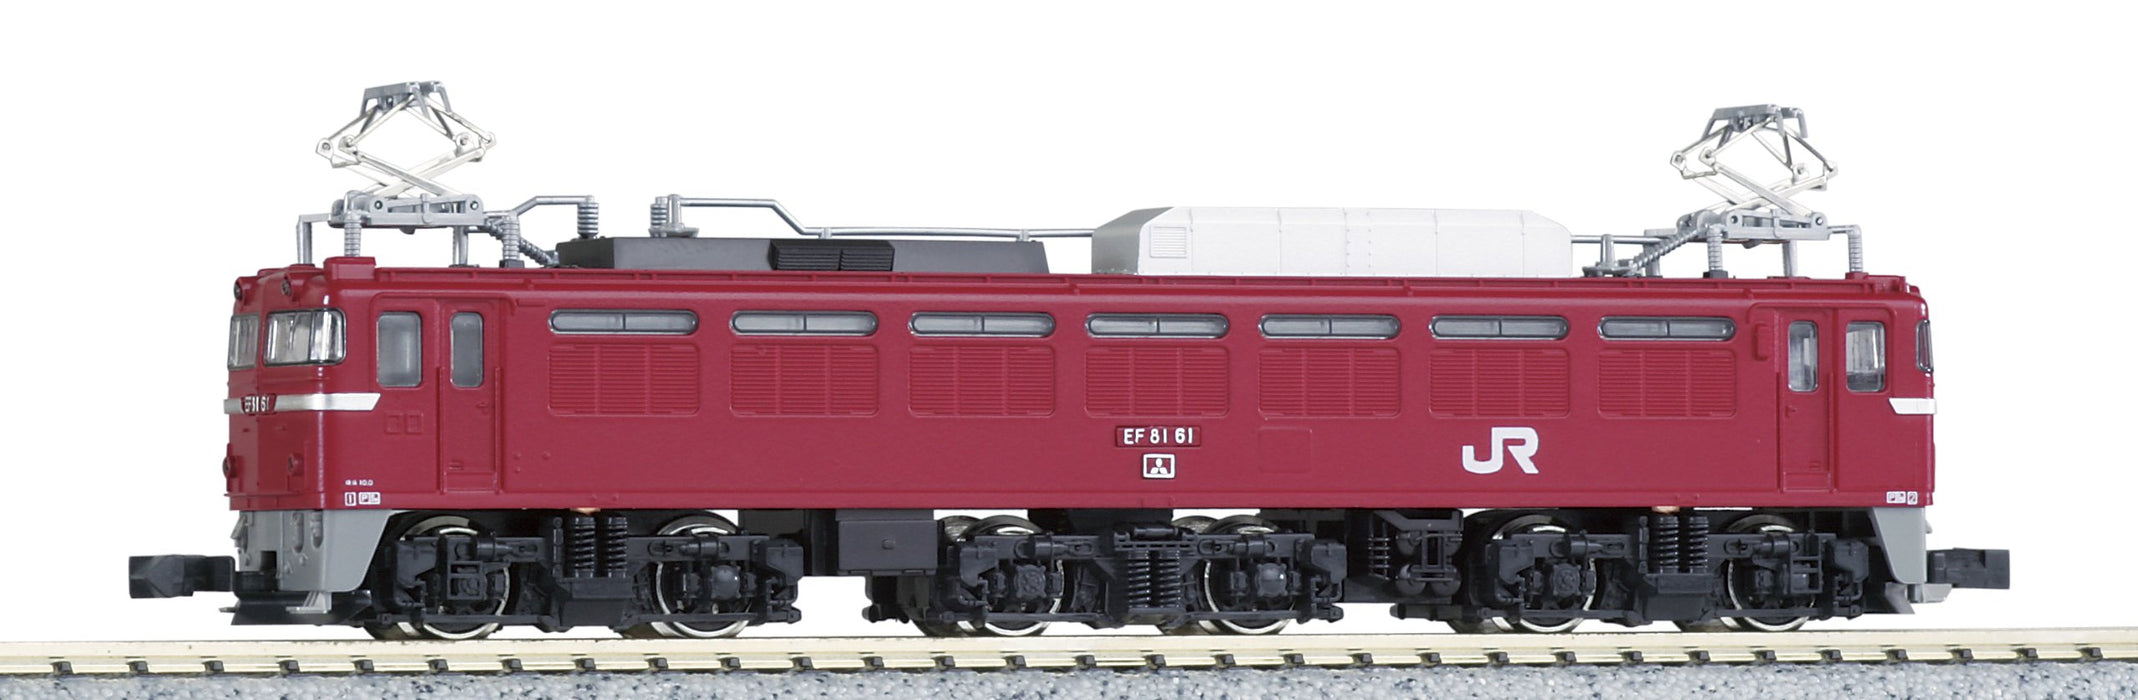 Kato N Gauge 3021-6 Ef81 Model Train - Jr East Japan Color Edition